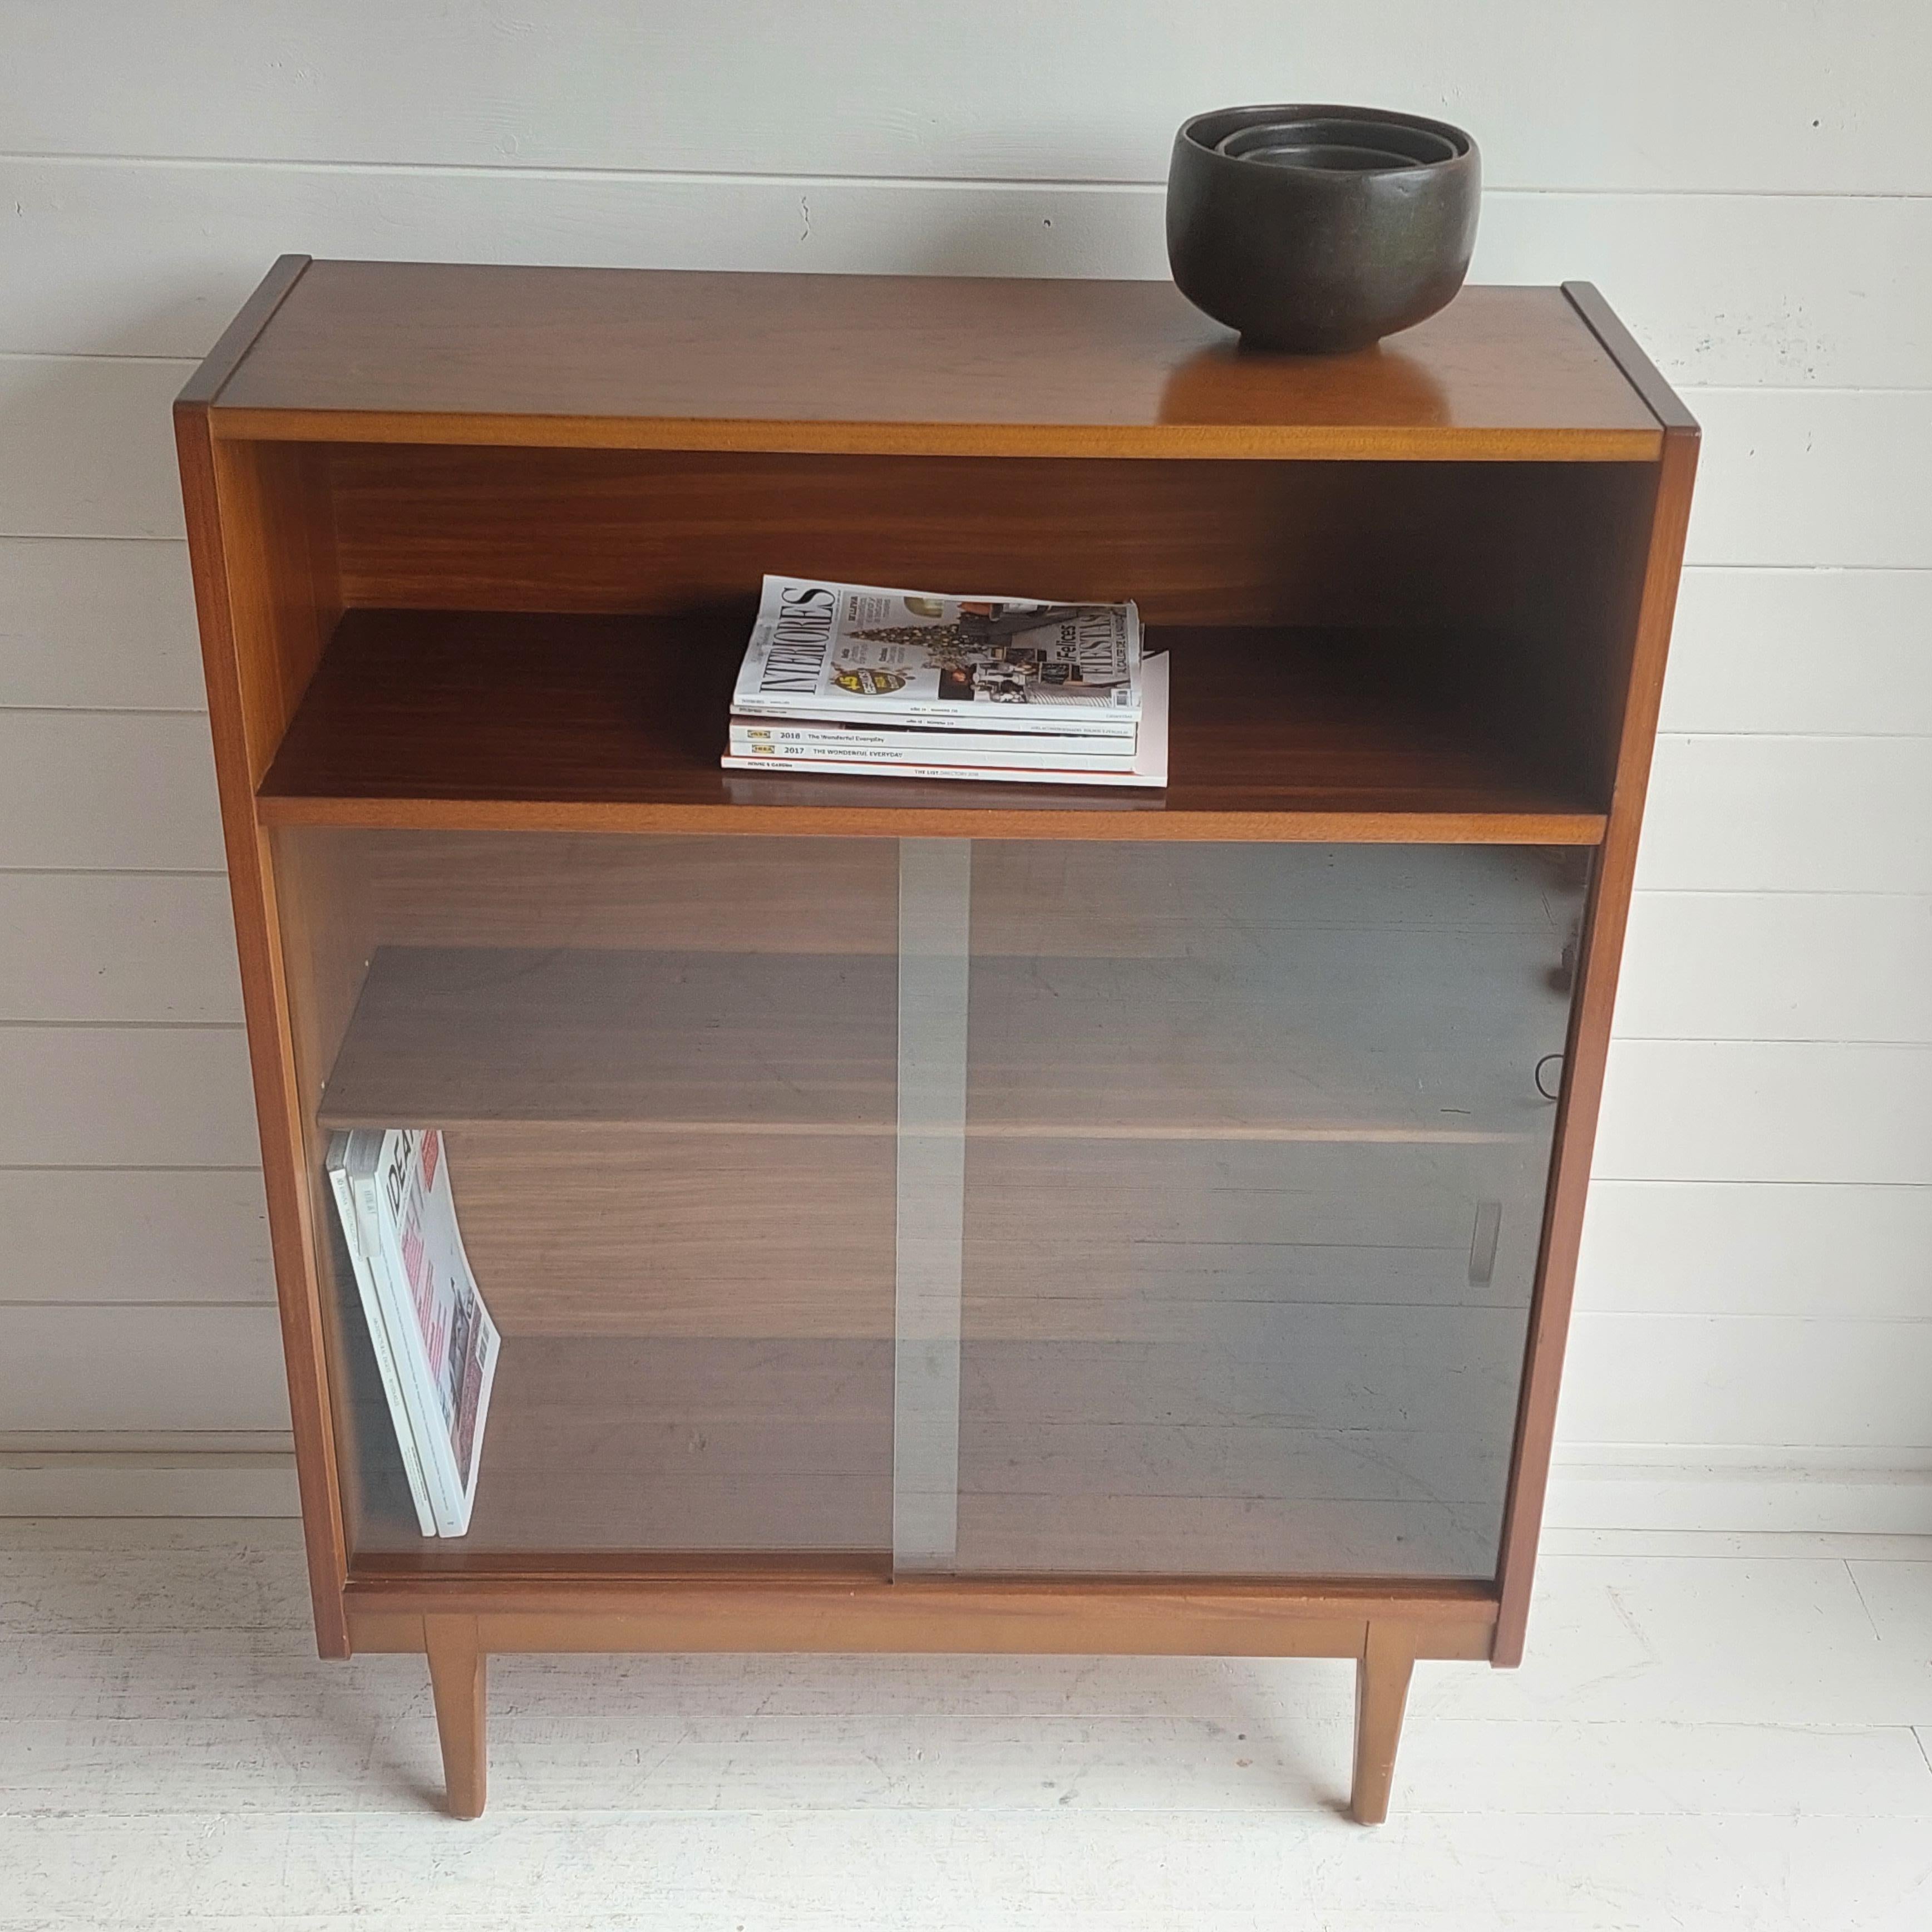 British Midcentury Nathan Teak Glazed Bookcase Display Unit Cabinet Danish Style, 60s